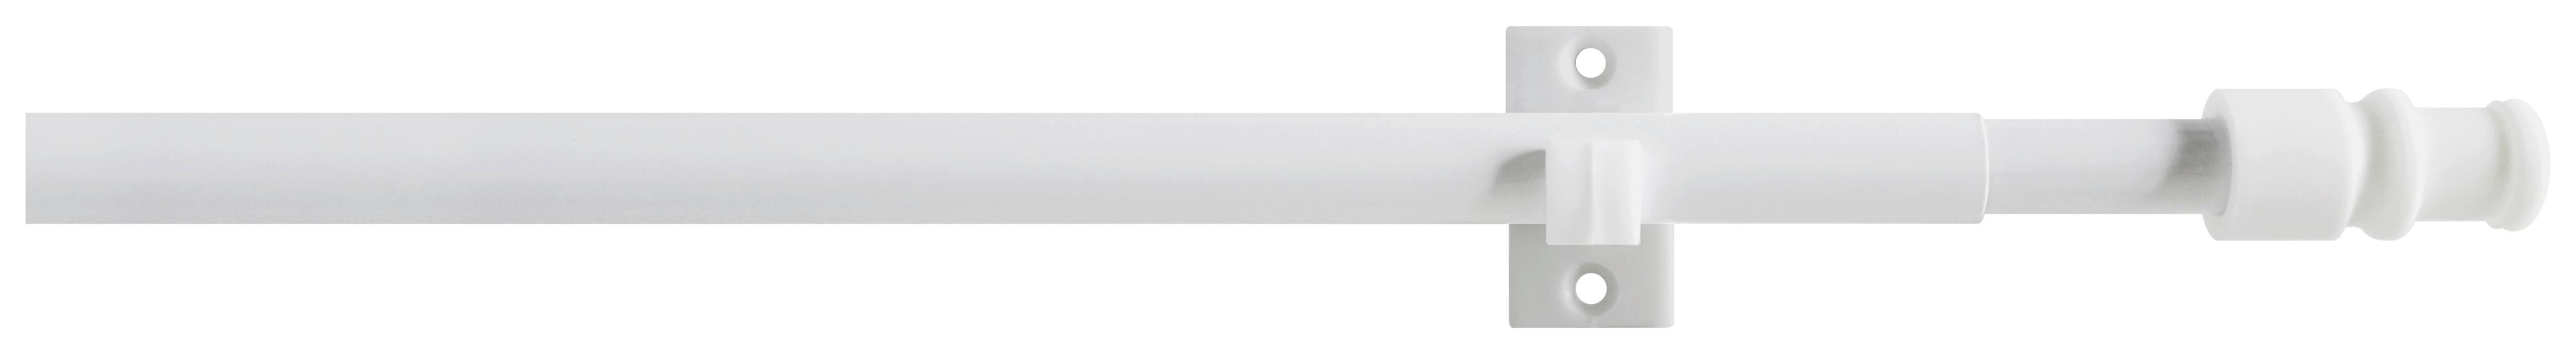 Vitragenstange Weiß L: 135-225 cm - Weiß, KONVENTIONELL, Kunststoff/Metall (135-225cm) - Ondega